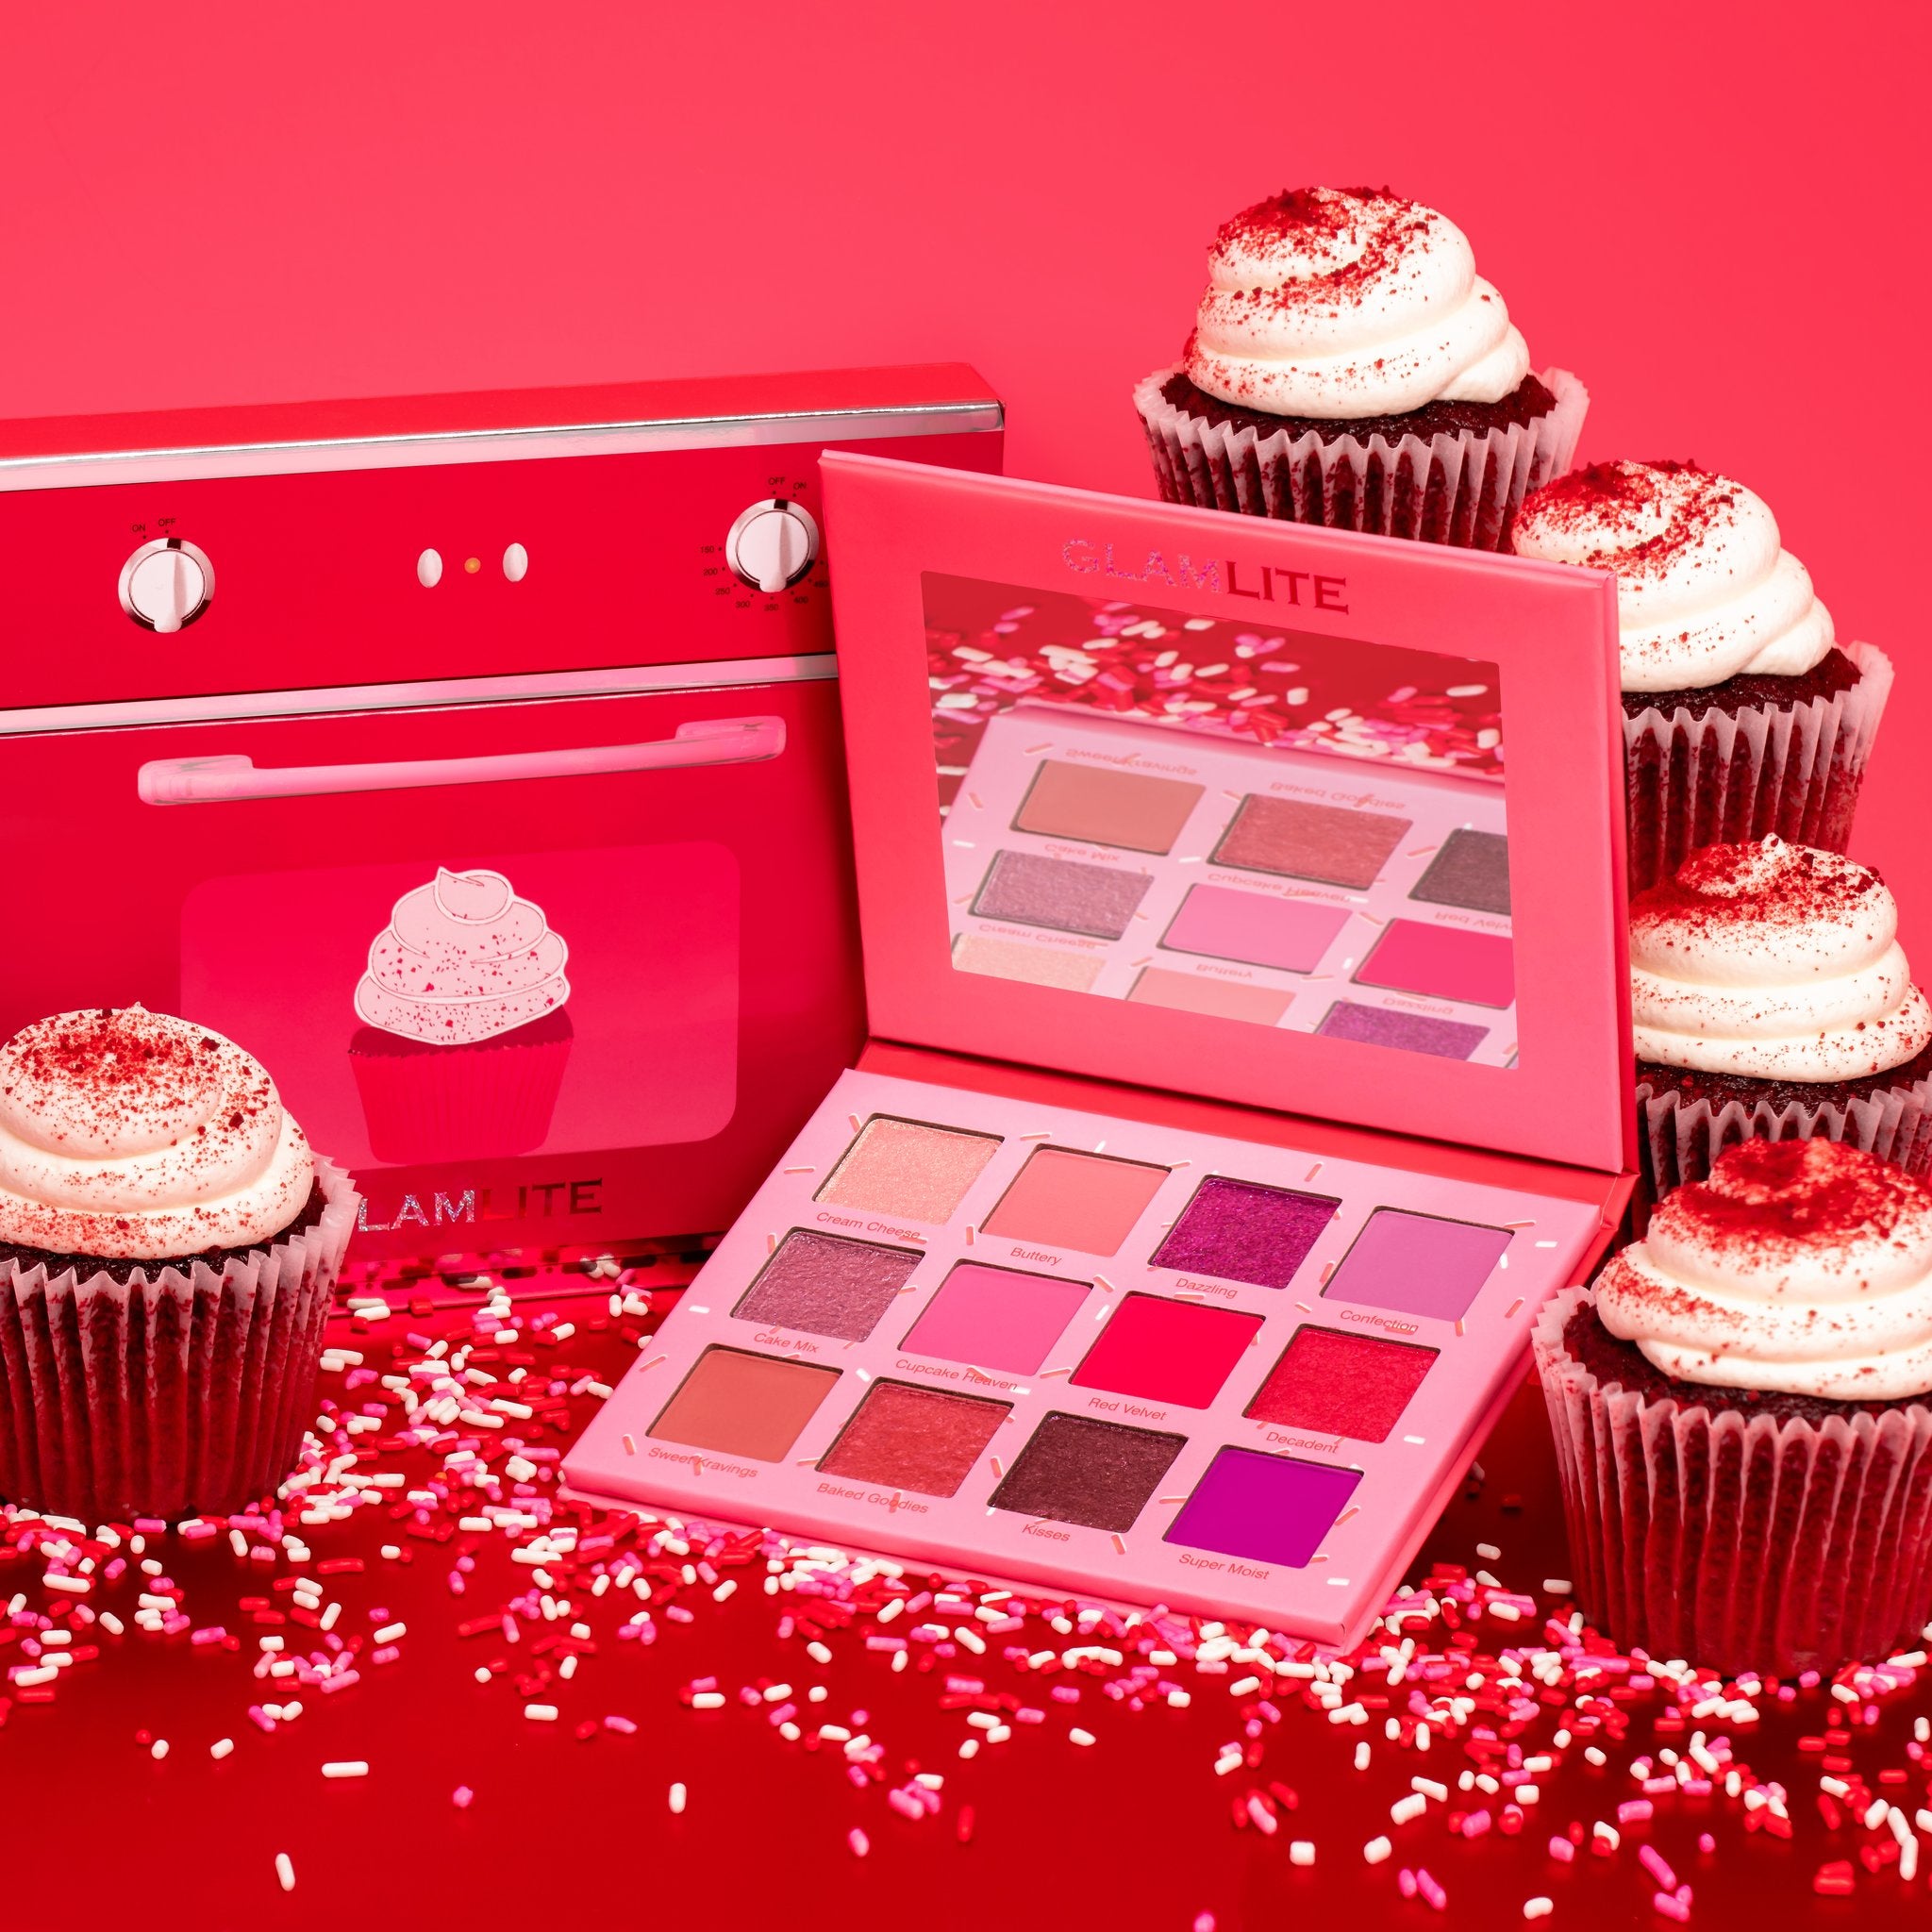 Glamlite Cosmetics - Red Velvet Cupcake Palette